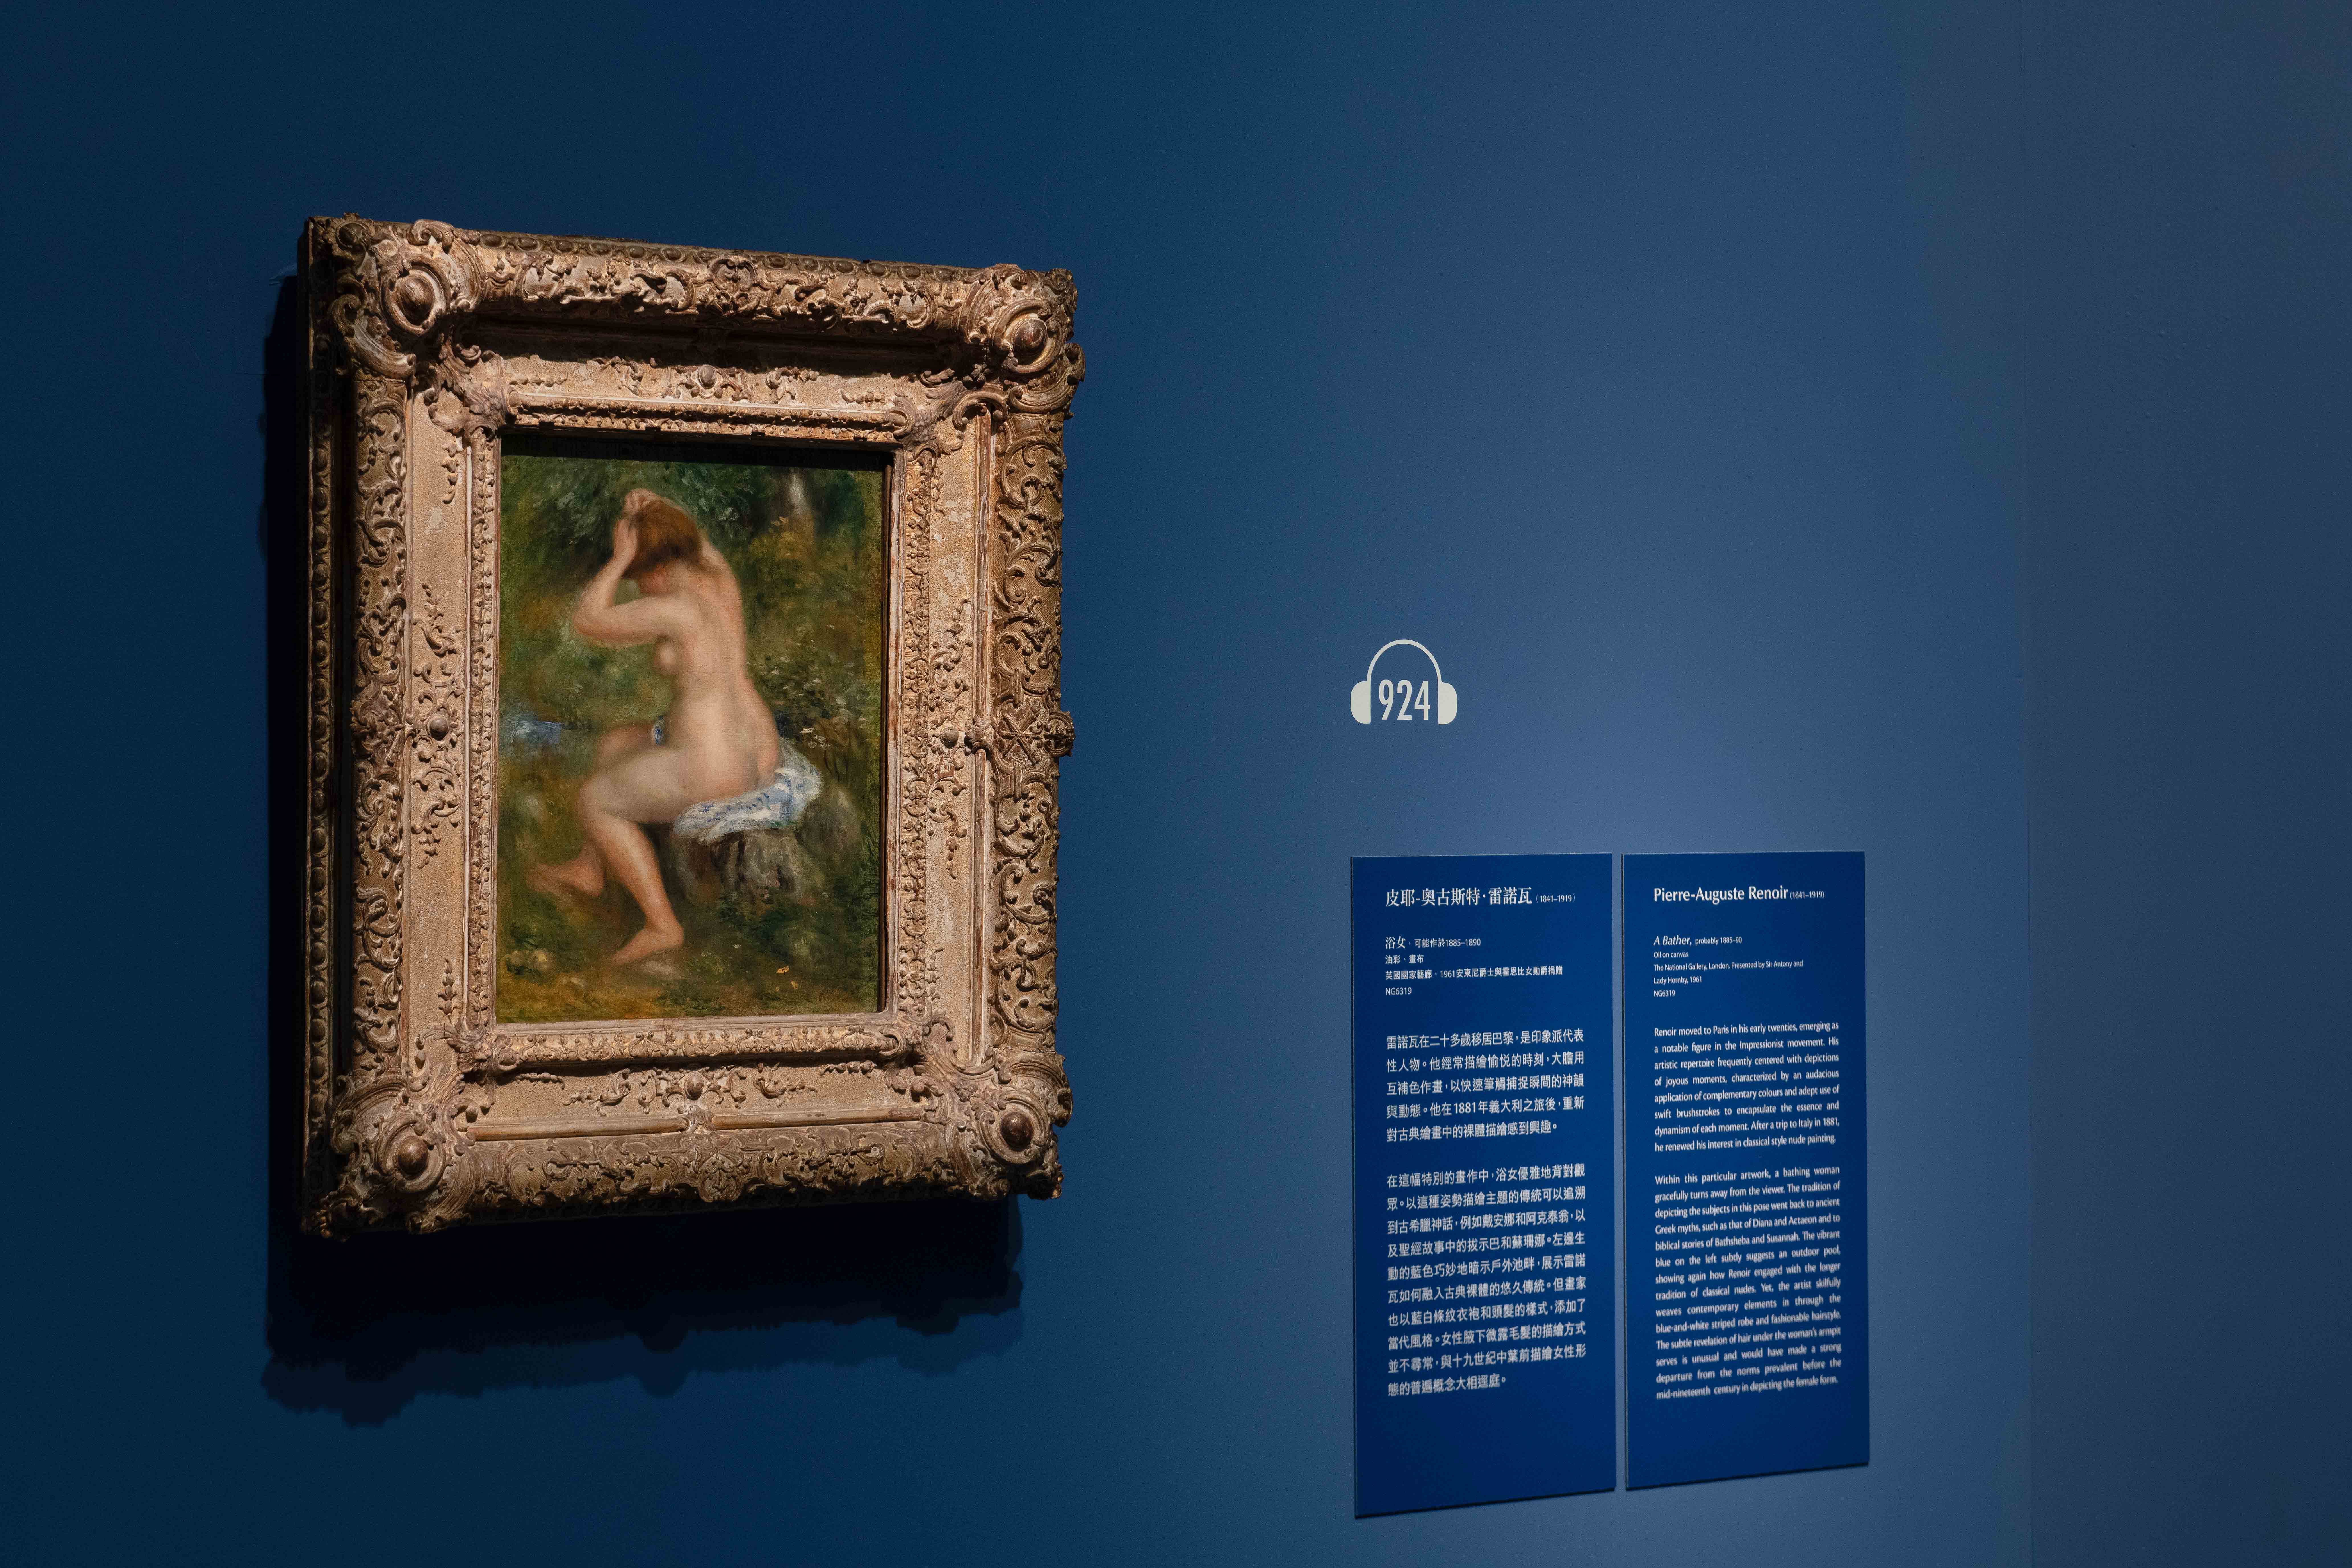 奇 美 博 物 館 《 英 國 國 家 藝 廊 珍 藏 展 》 第 四 單 元 「 光 線 與 色 彩 ： 印 象 派 繪 畫 」 - 皮 耶 － 奧 古 斯 特 ． 雷 諾 瓦 （ 1 8 4 1 - 1 9 1 9 ） 作 品 〈 浴 女 〉 ， 可 能 於 1 8 8 5 - 1 8 9 0 年 創 作 。 圖 / 奇 美 博 物 館 提 供 